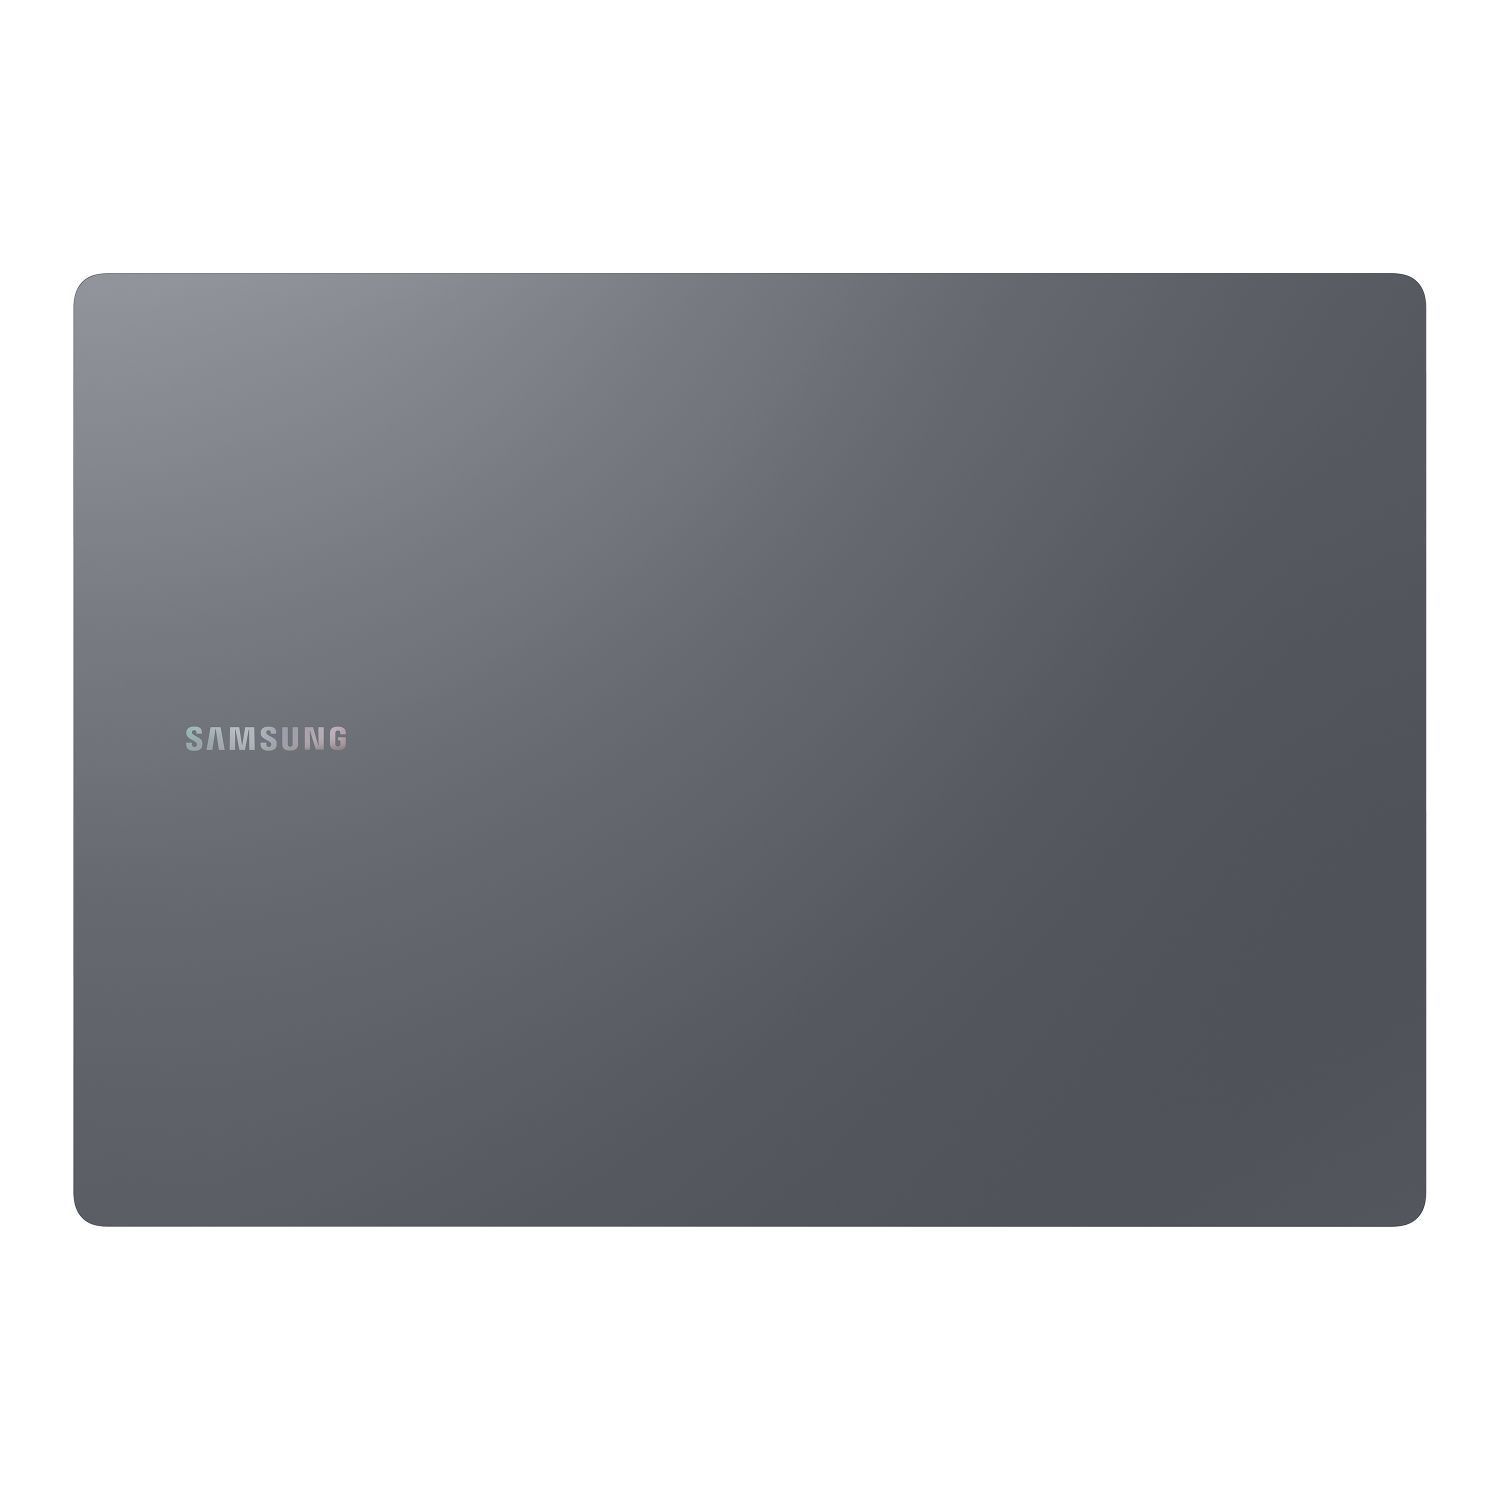 NP960XGL-XG1ES - Porttil Samsung Galaxy Book4 Ultra i7-155H 16Gb 1Tb SSD Cmara Frontal 2mp 16